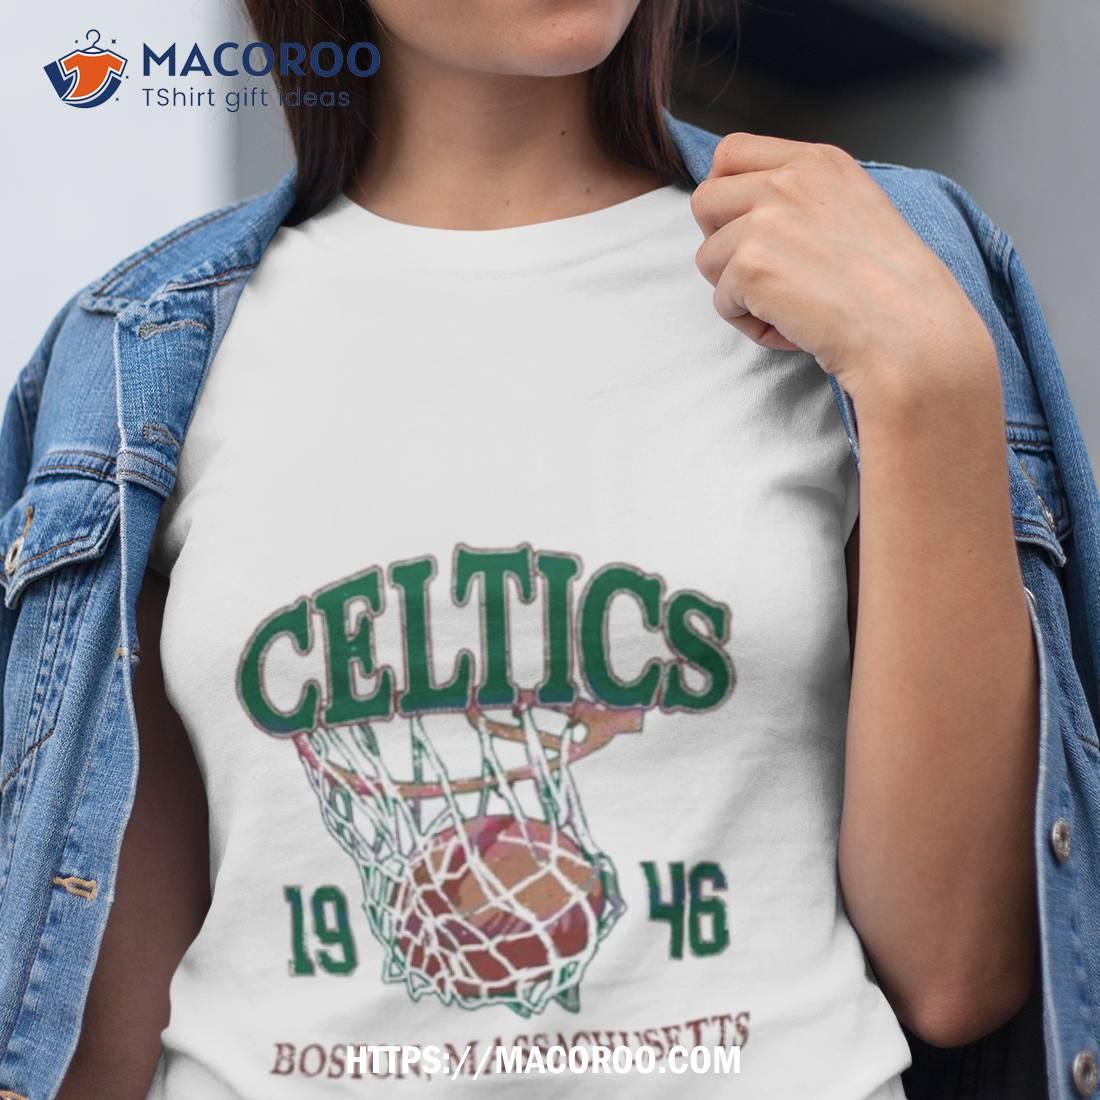 Boston Celtics Jersey concept  Basketball t shirt designs, Best